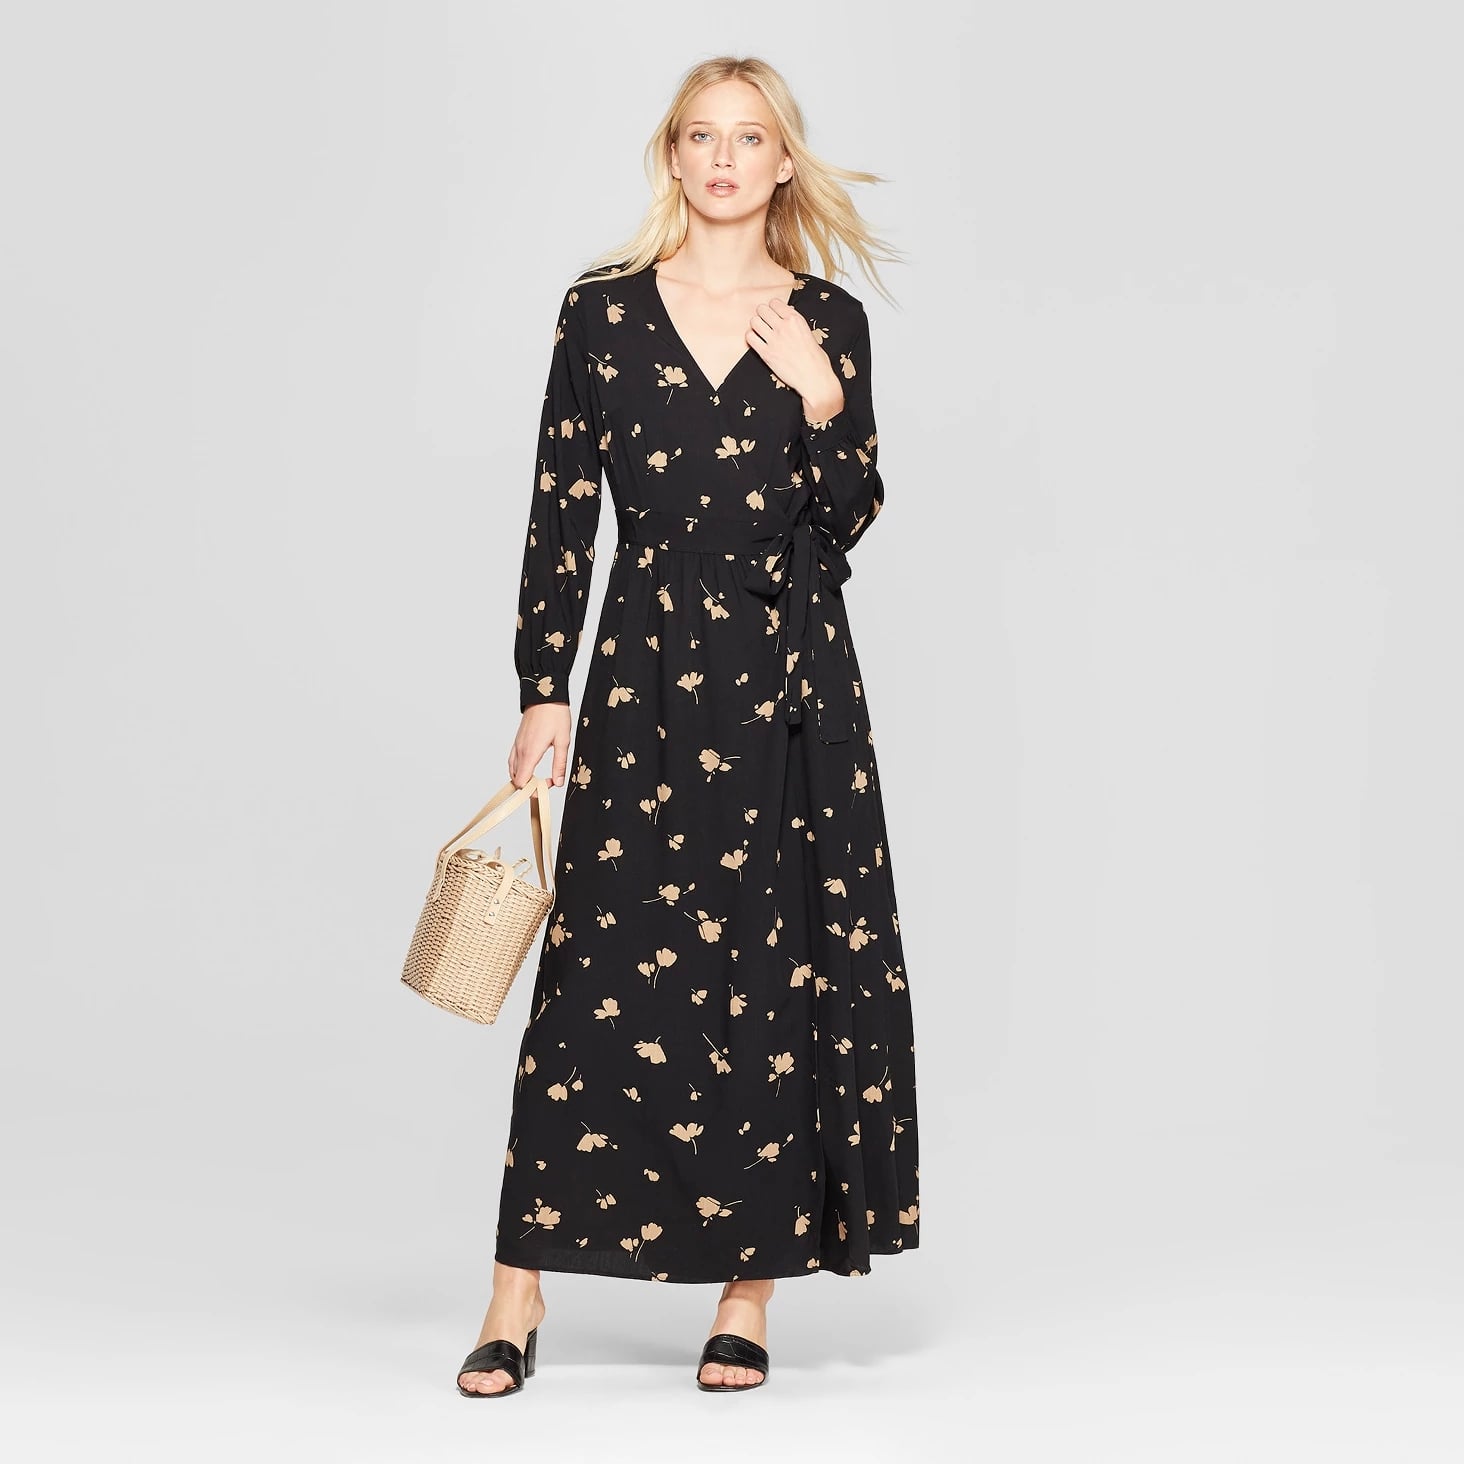 Best Spring Dresses at Target 2019 ...